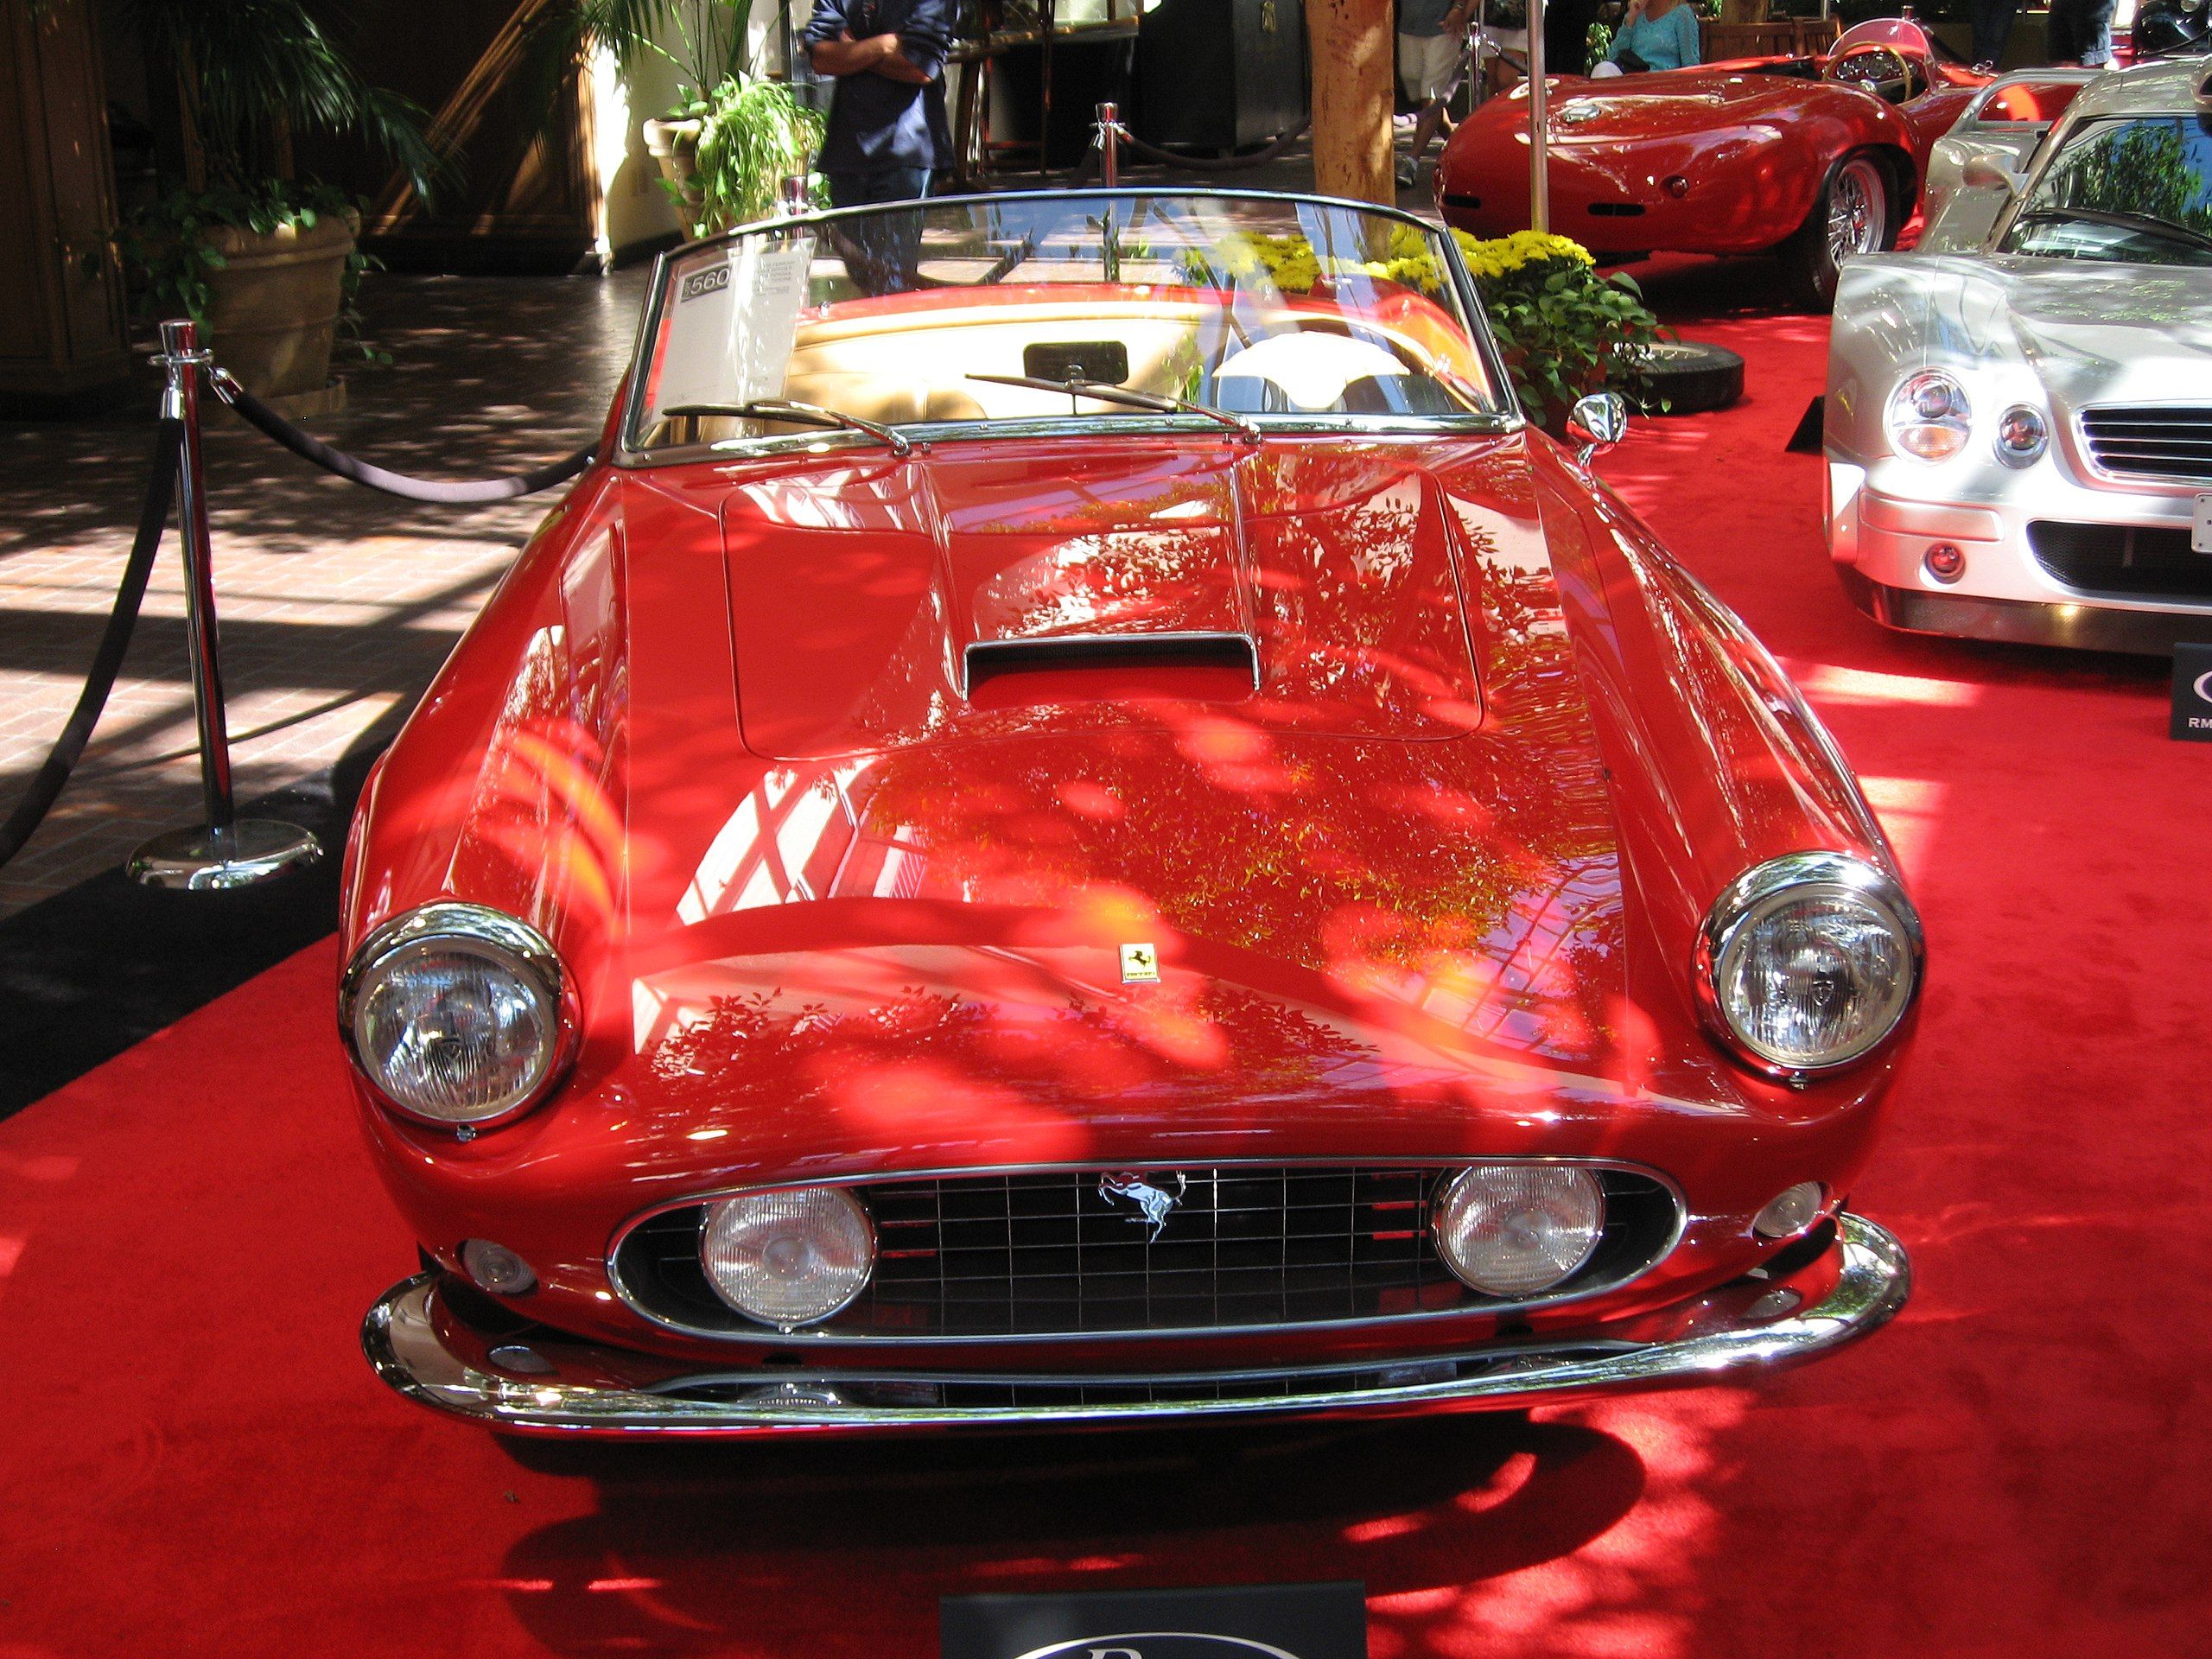 Ferrari 250 GT California Spyder in red at a car show